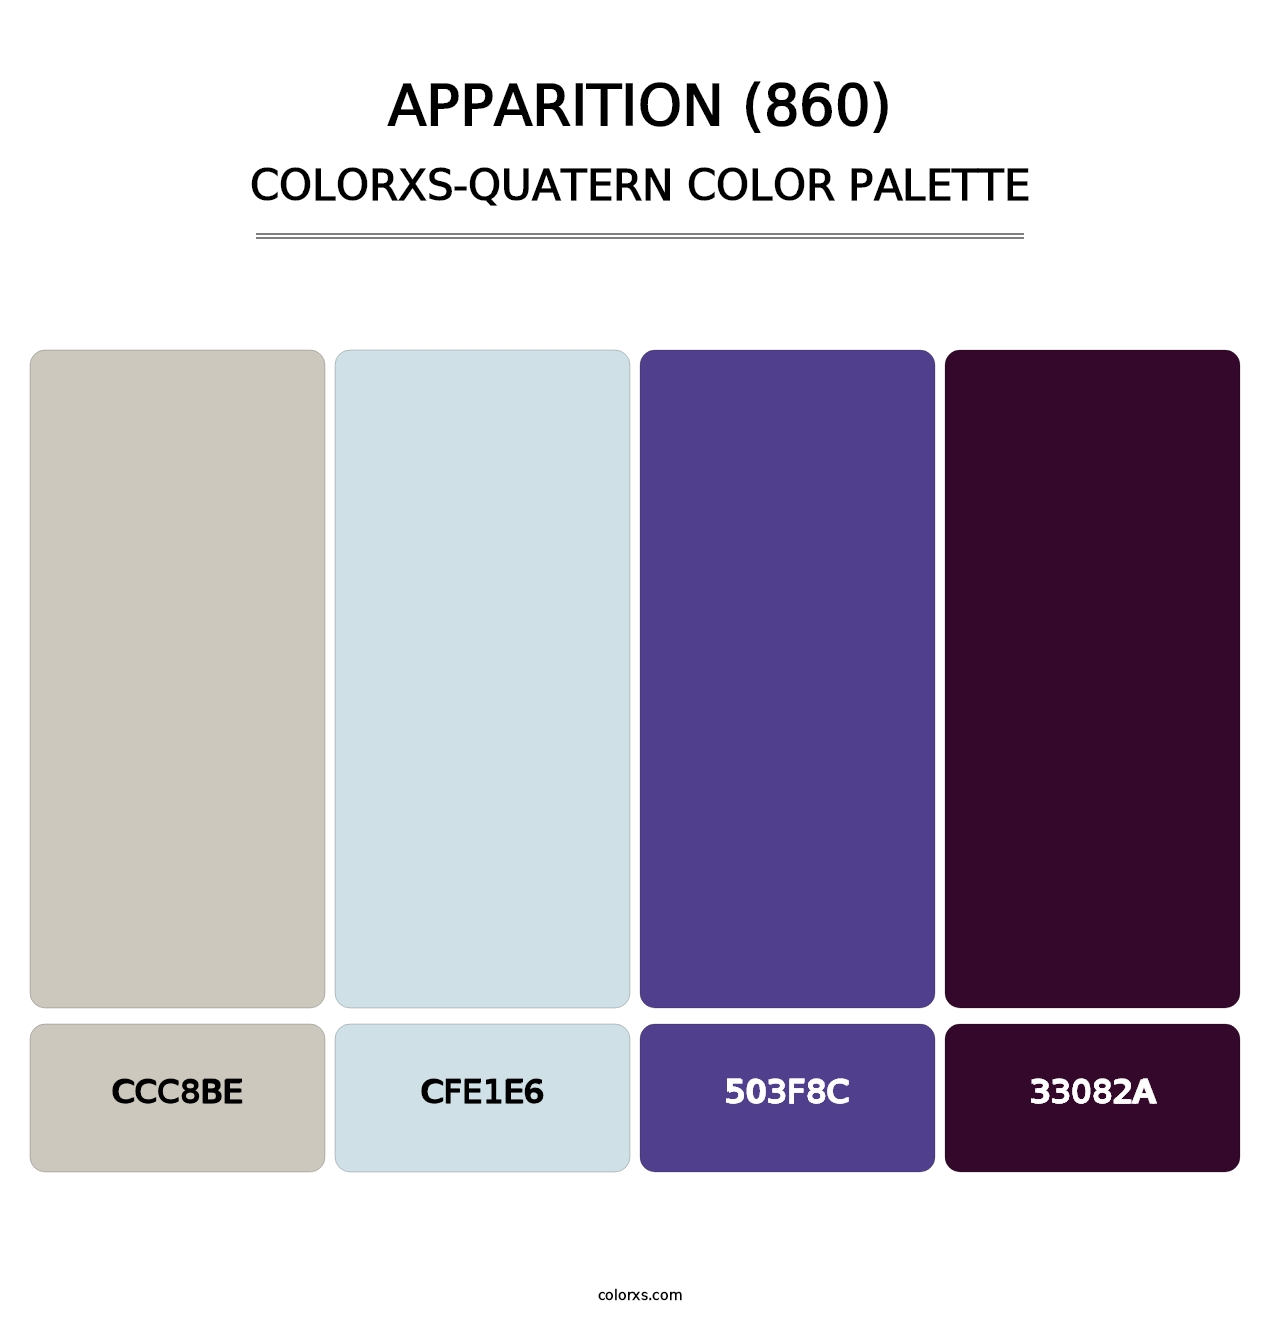 Apparition (860) - Colorxs Quatern Palette